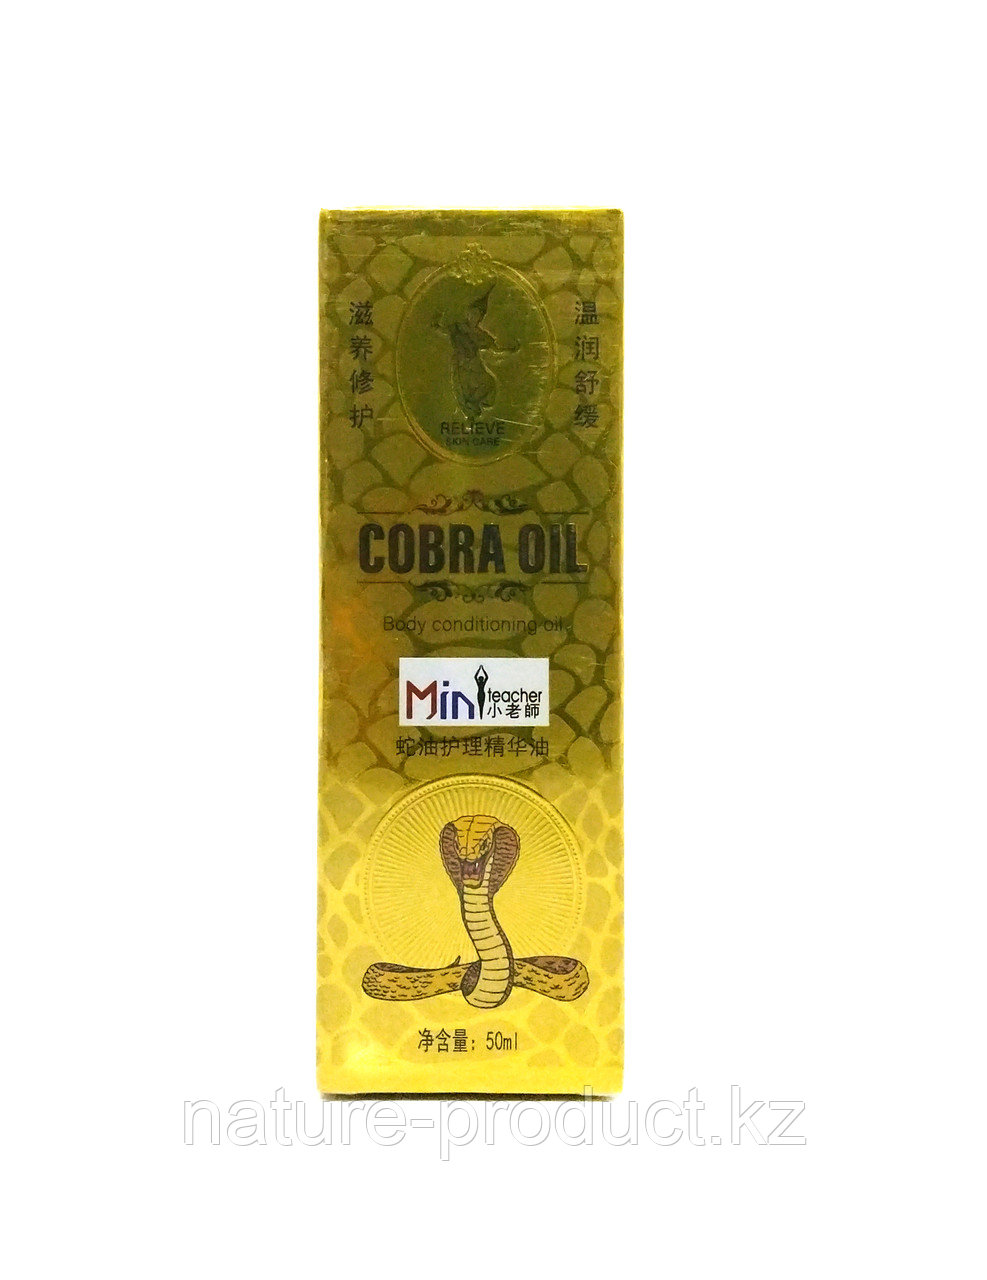 Cobra body conditioning oil. Эфирное масло с жиром кобры. Для суставов и кожи.